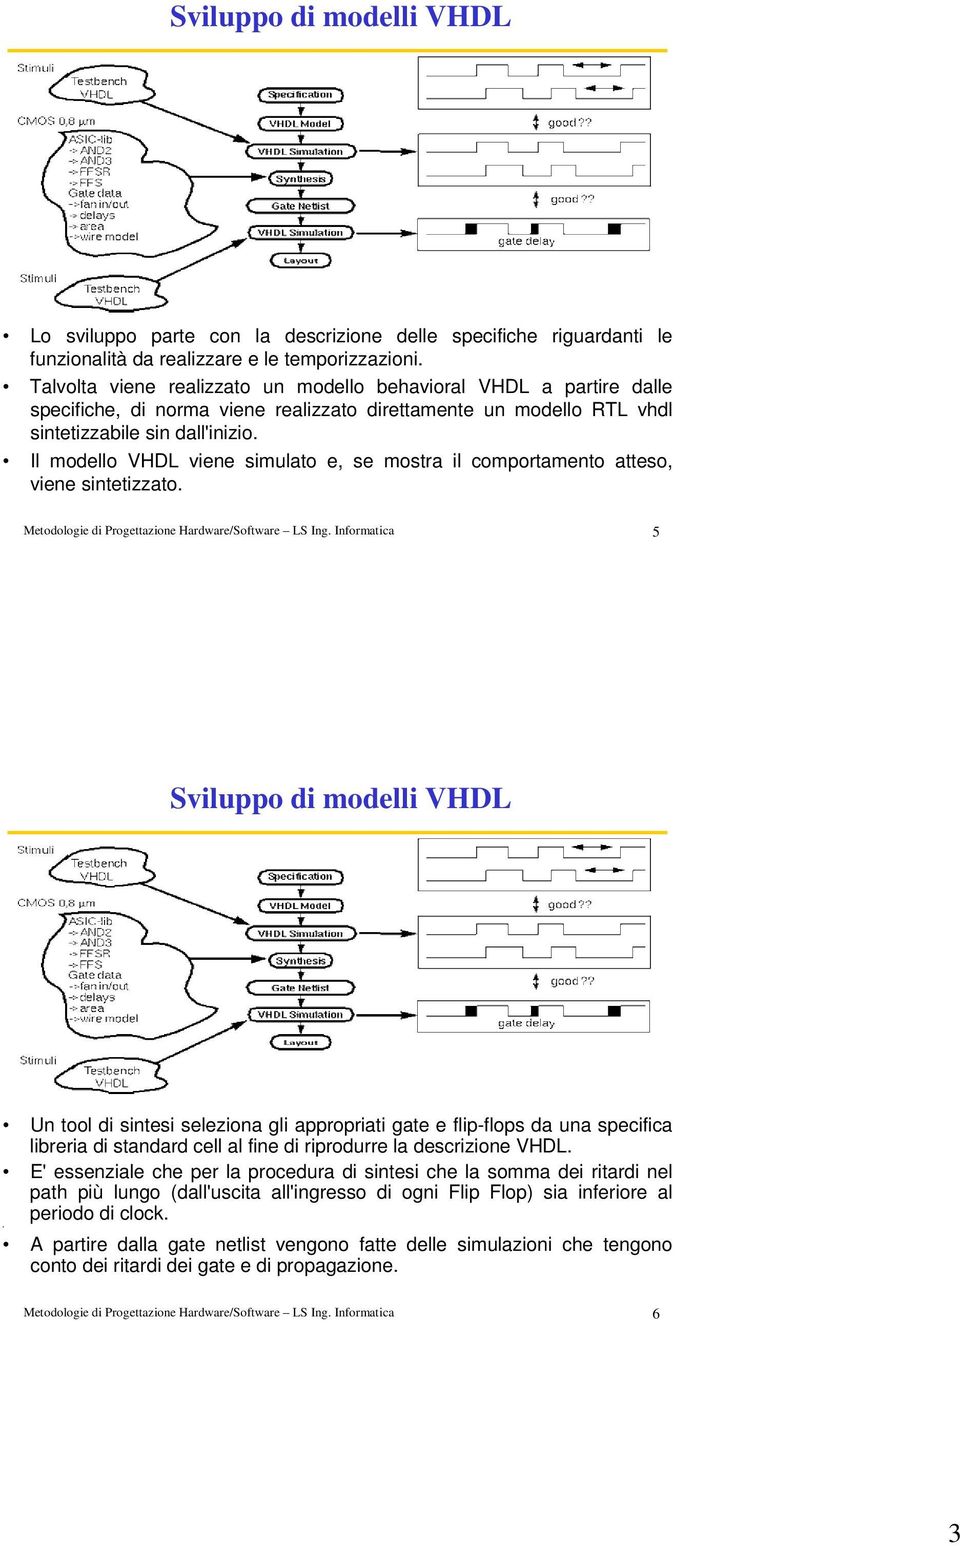 Il modello VHDL viene simulato e, se mostra il comportamento atteso, viene sintetizzato. Metodologie di Progettazione Hardware/Software LS Ing.